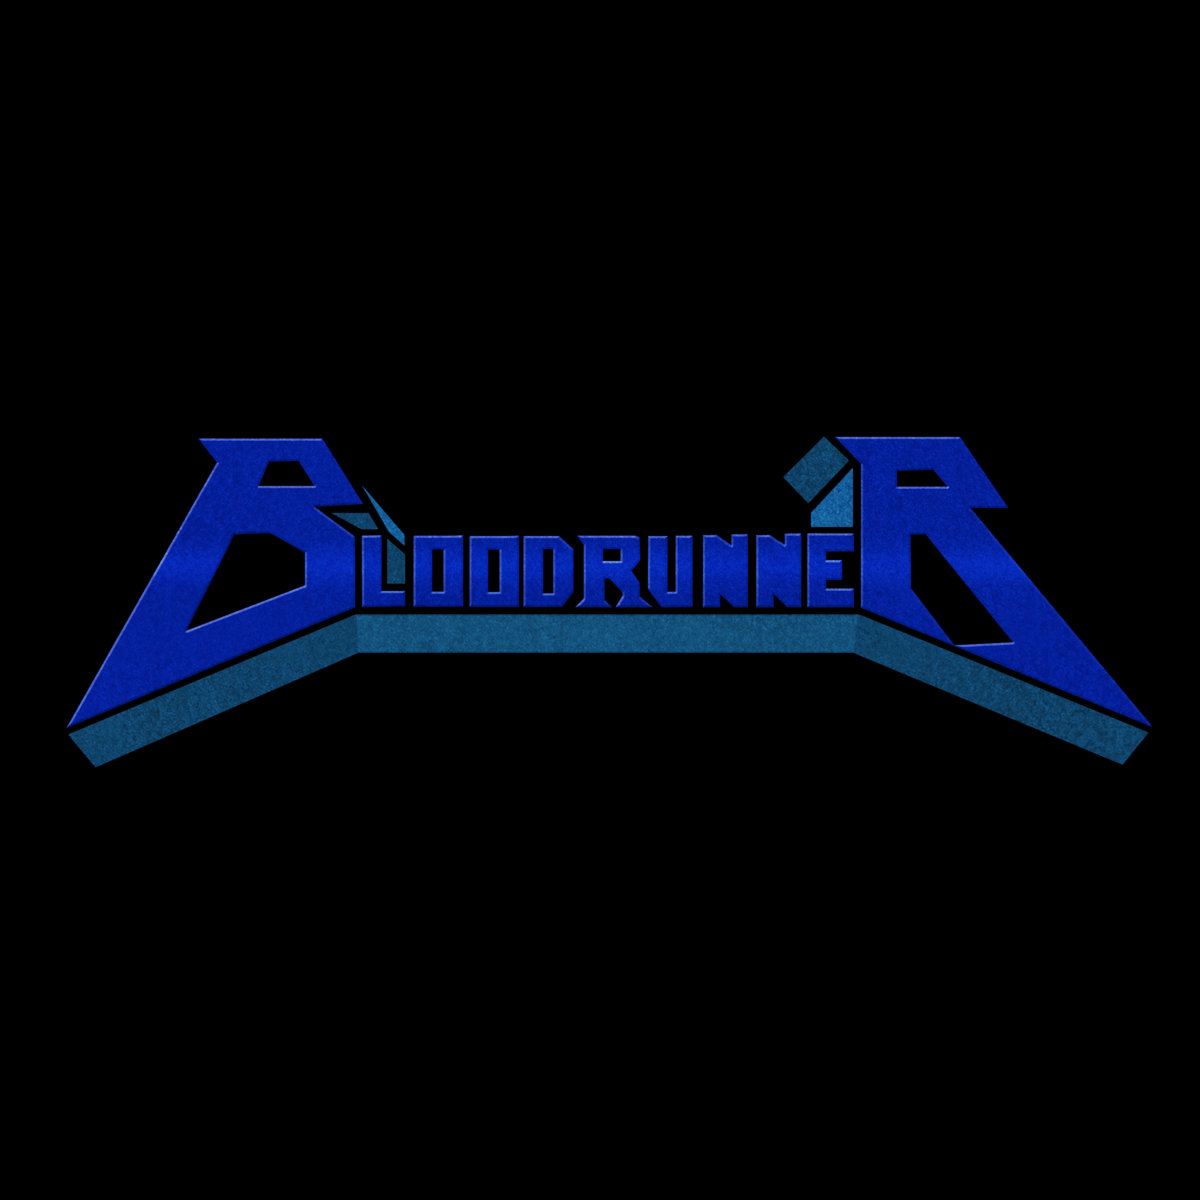 BLOODRUNNER-Bloodrunner-cover.jpg